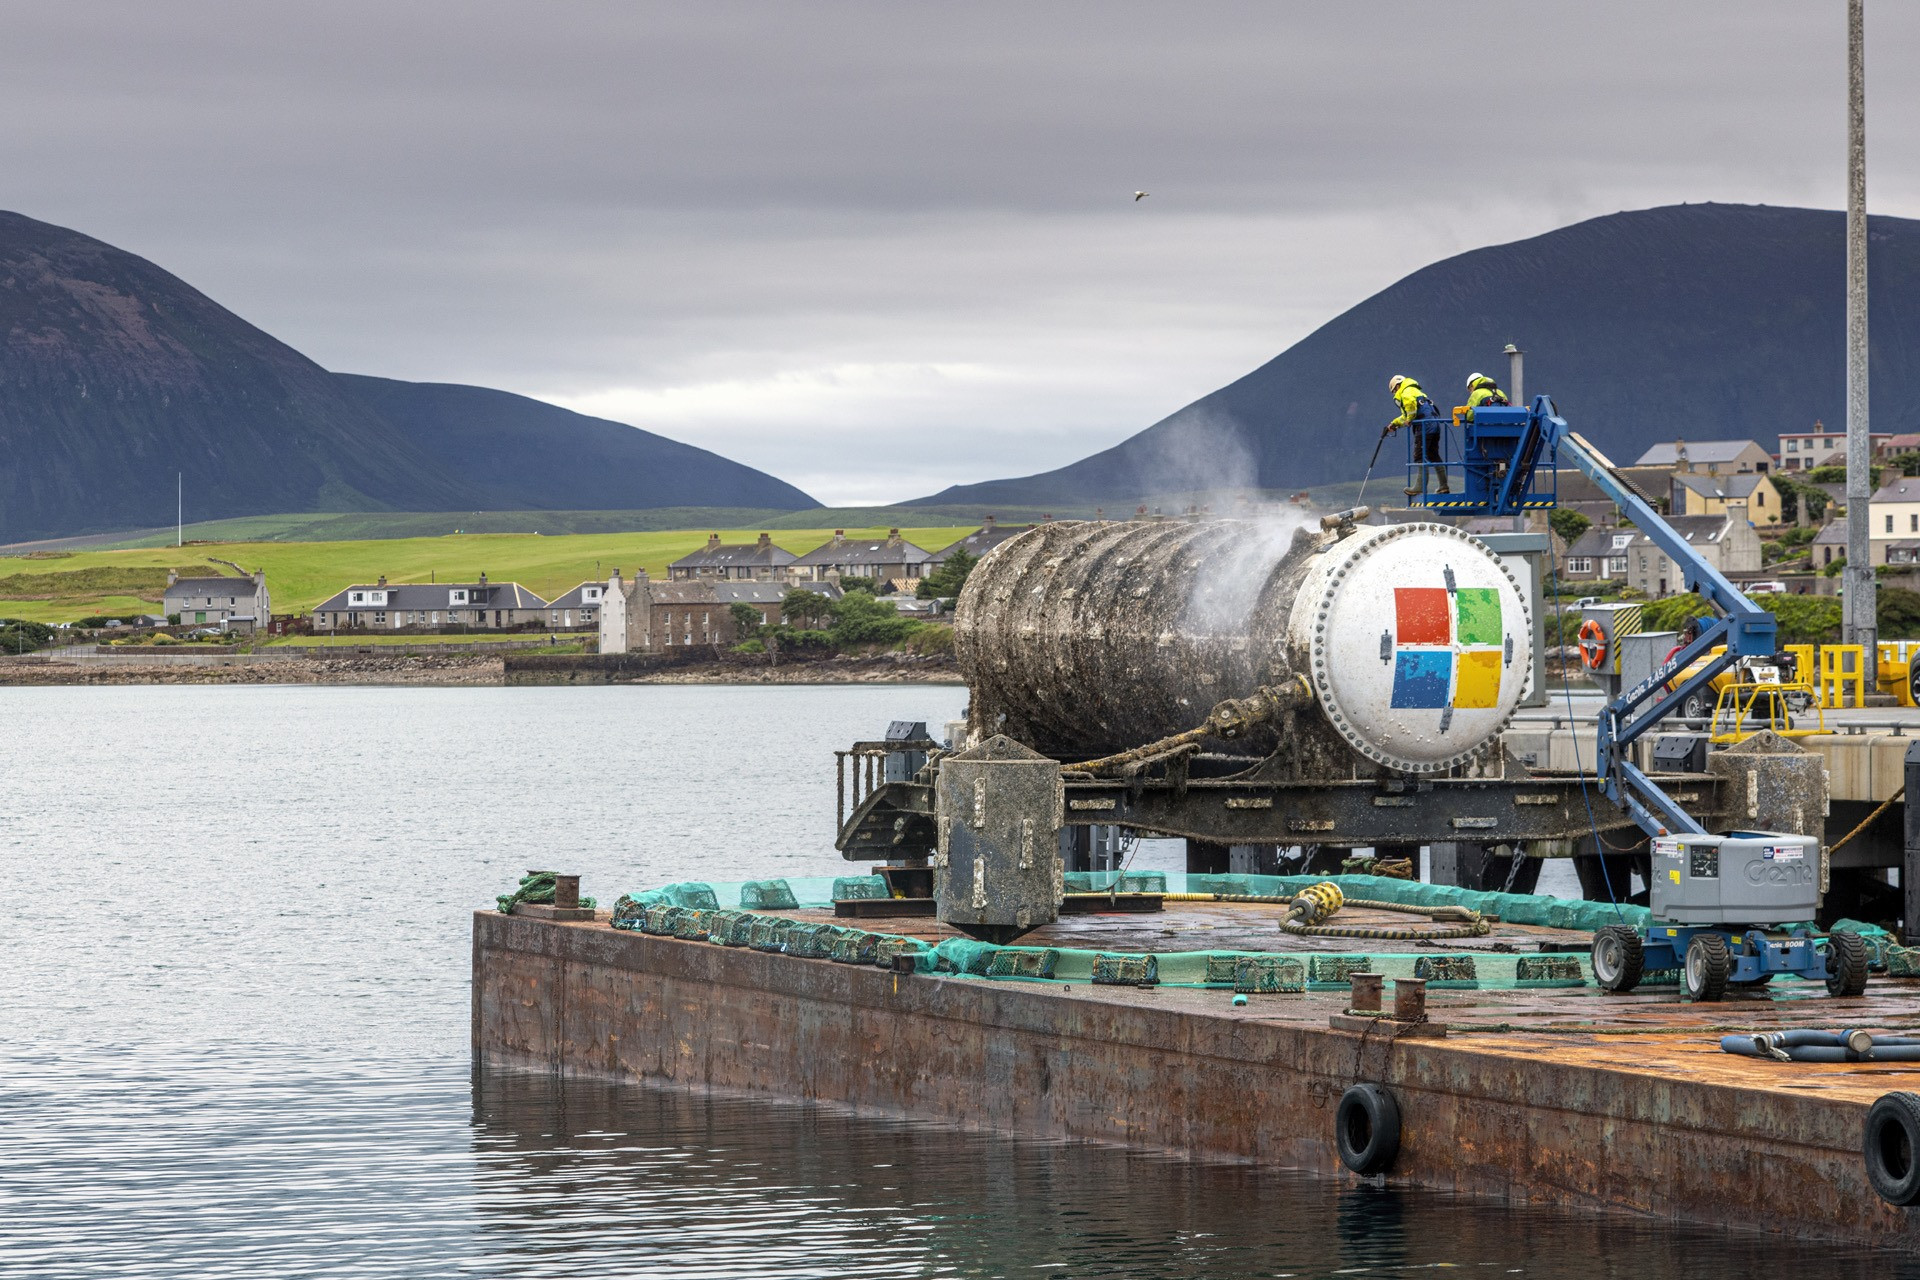 Trung tâm dữ liệu của Microsoft được vớt lên sau hai năm chìm sâu dưới đáy biển Scotland. Ảnh: Microsoft